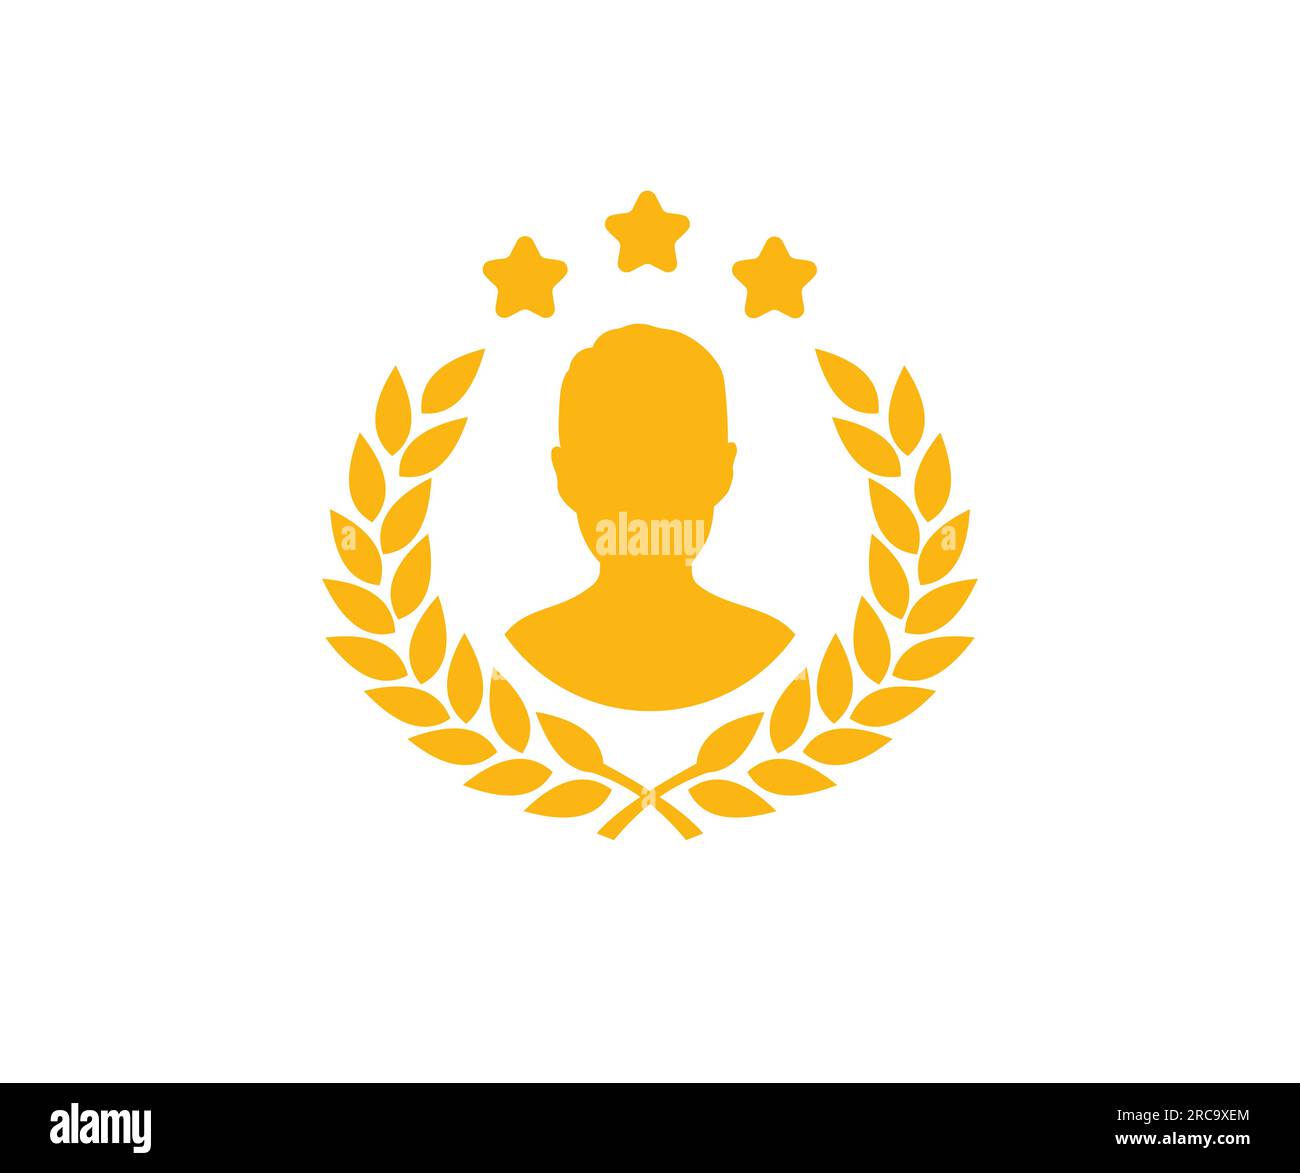 Kreisförmiges Lorbeerblatt in goldener Silhouette mit Avatar, Weizen- und Eichenkränze für Männer, die ein preisgekröntes, erfolgreiches und heraltrockenes Logo darstellen. Gold-Sieger. Stock Vektor